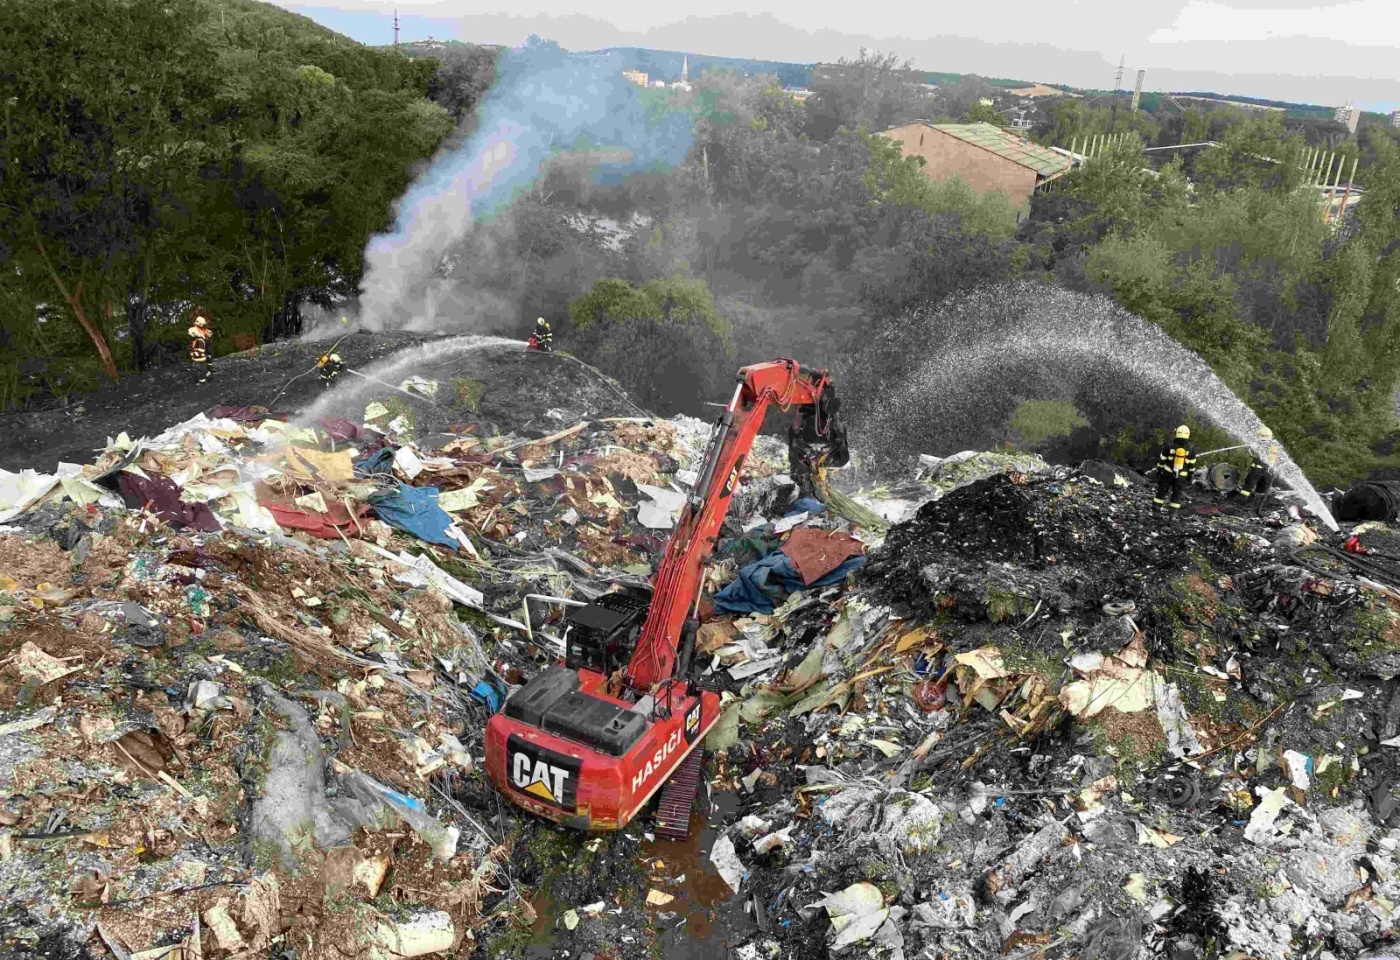 061-Dohašování požáru skládky odpadu v kralupském kovošrotu.jpg